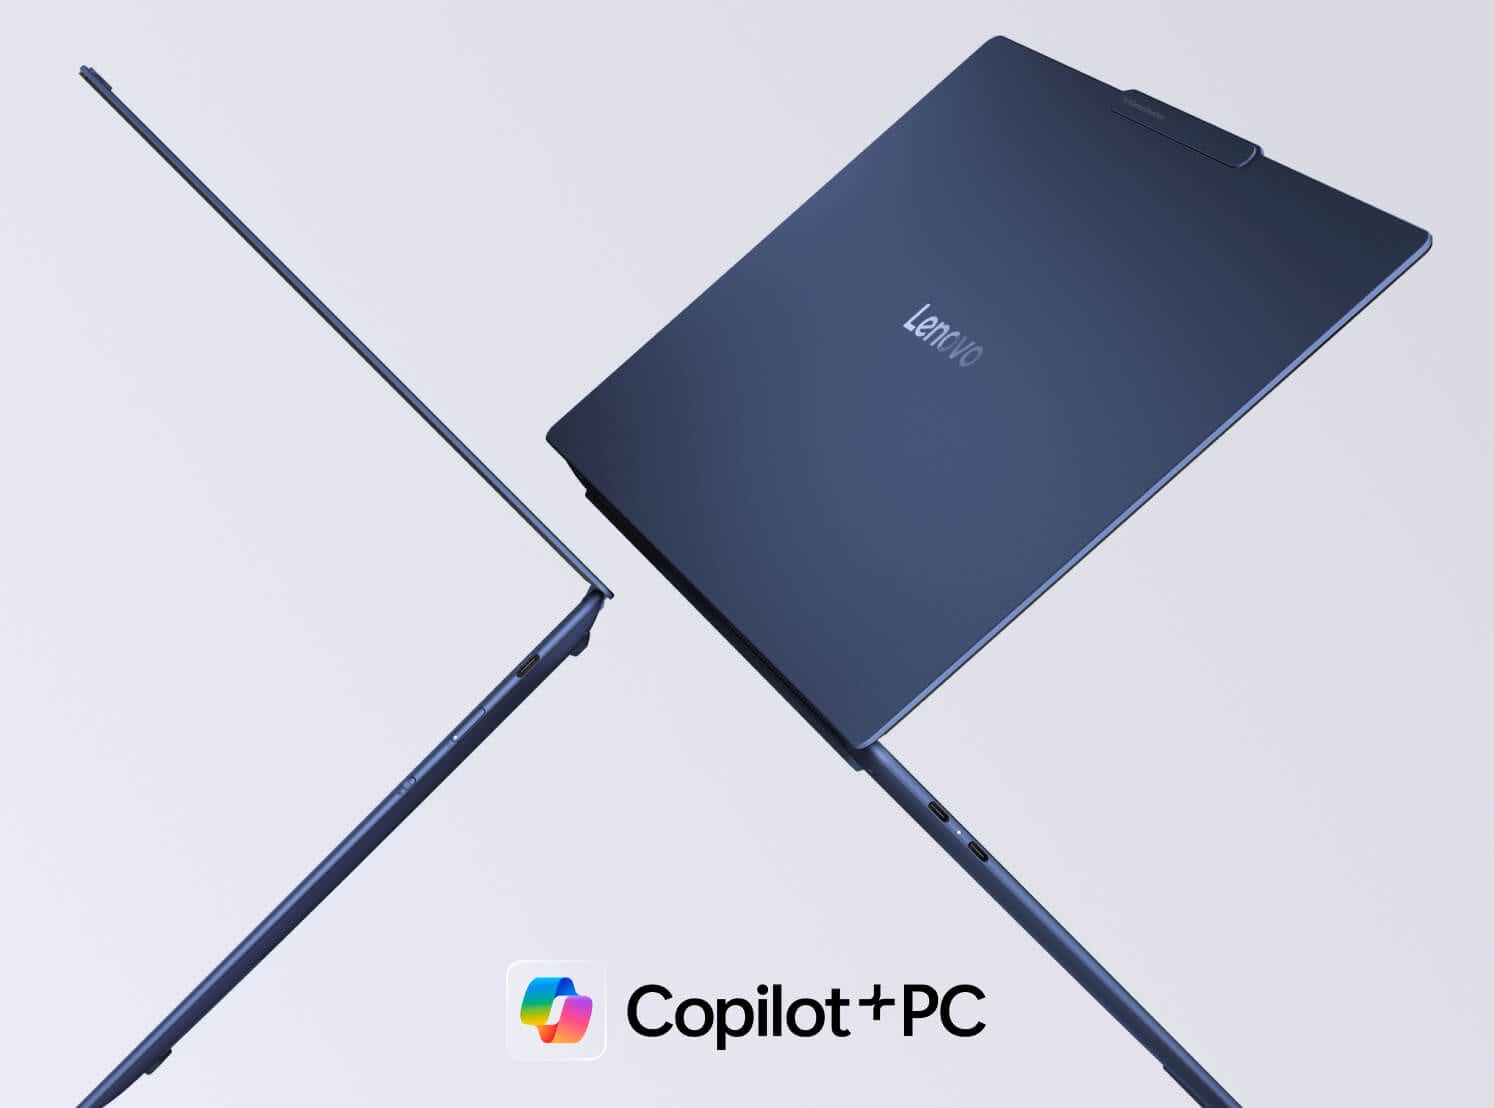 Два ноутбуки Lenovo Yoga ширяють у повітрі спиною один до одного, з логотипом ПК з Copilot+